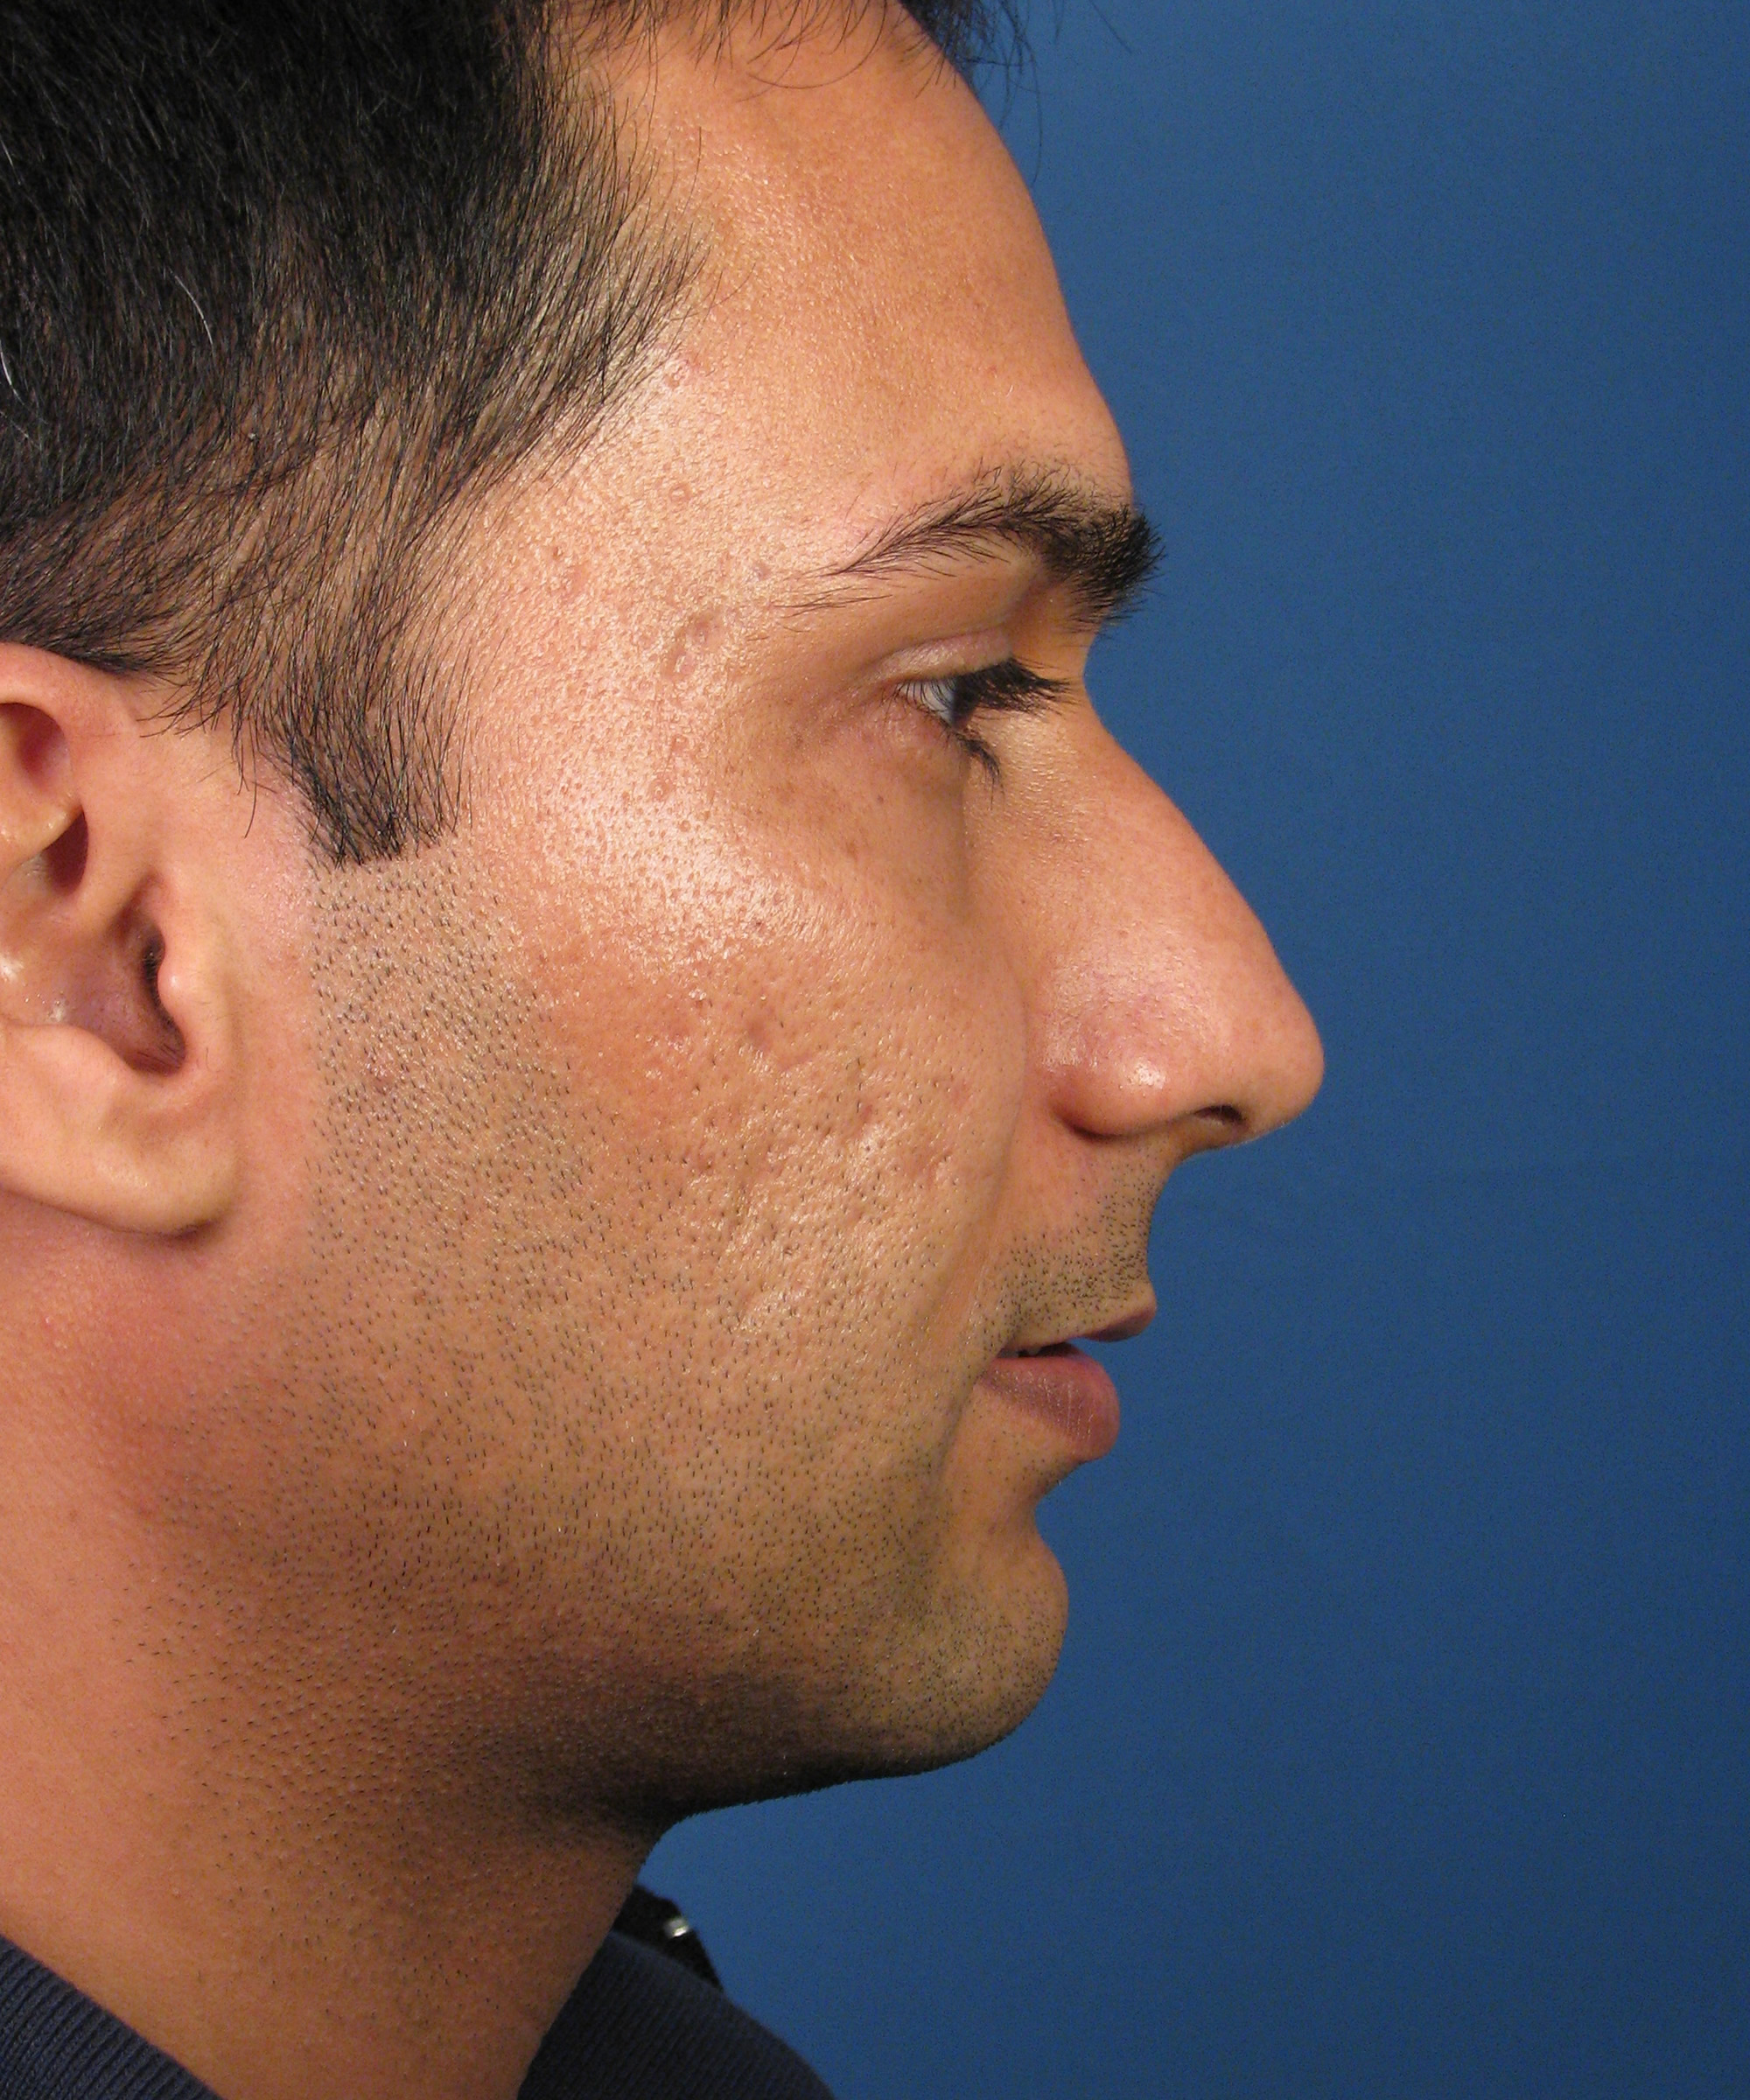 native american nose profile